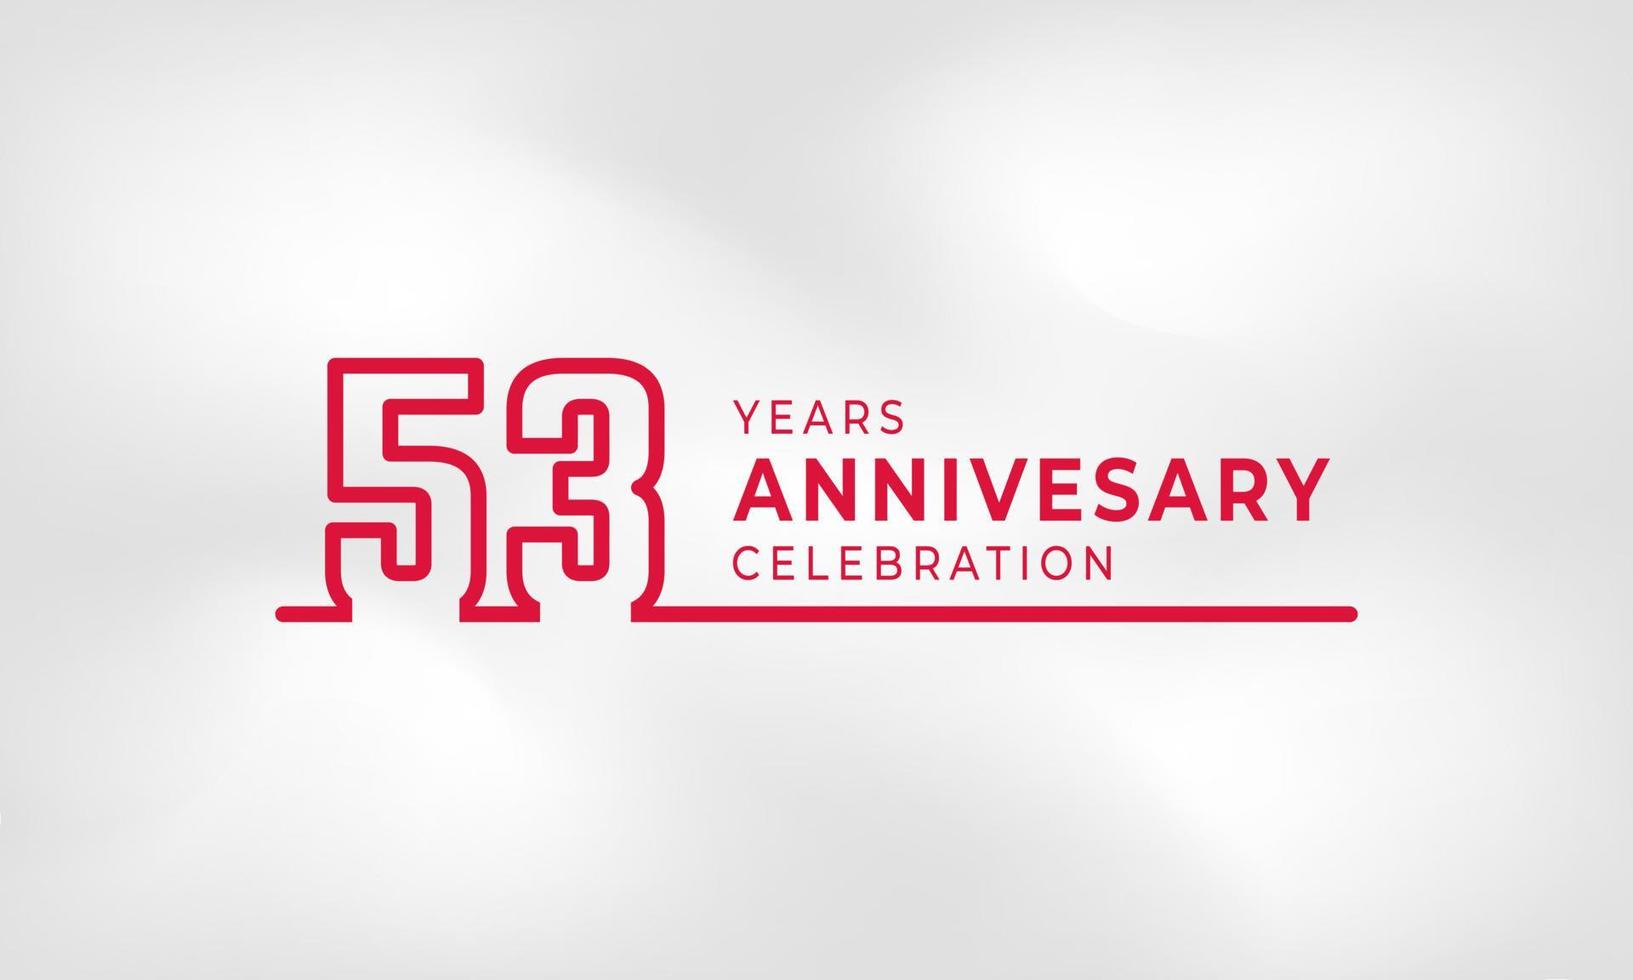 Celebrazione dell'anniversario di 53 anni logotipo collegato numero di contorno colore rosso per evento di celebrazione, matrimonio, biglietto di auguri e invito isolato su sfondo bianco trama vettore